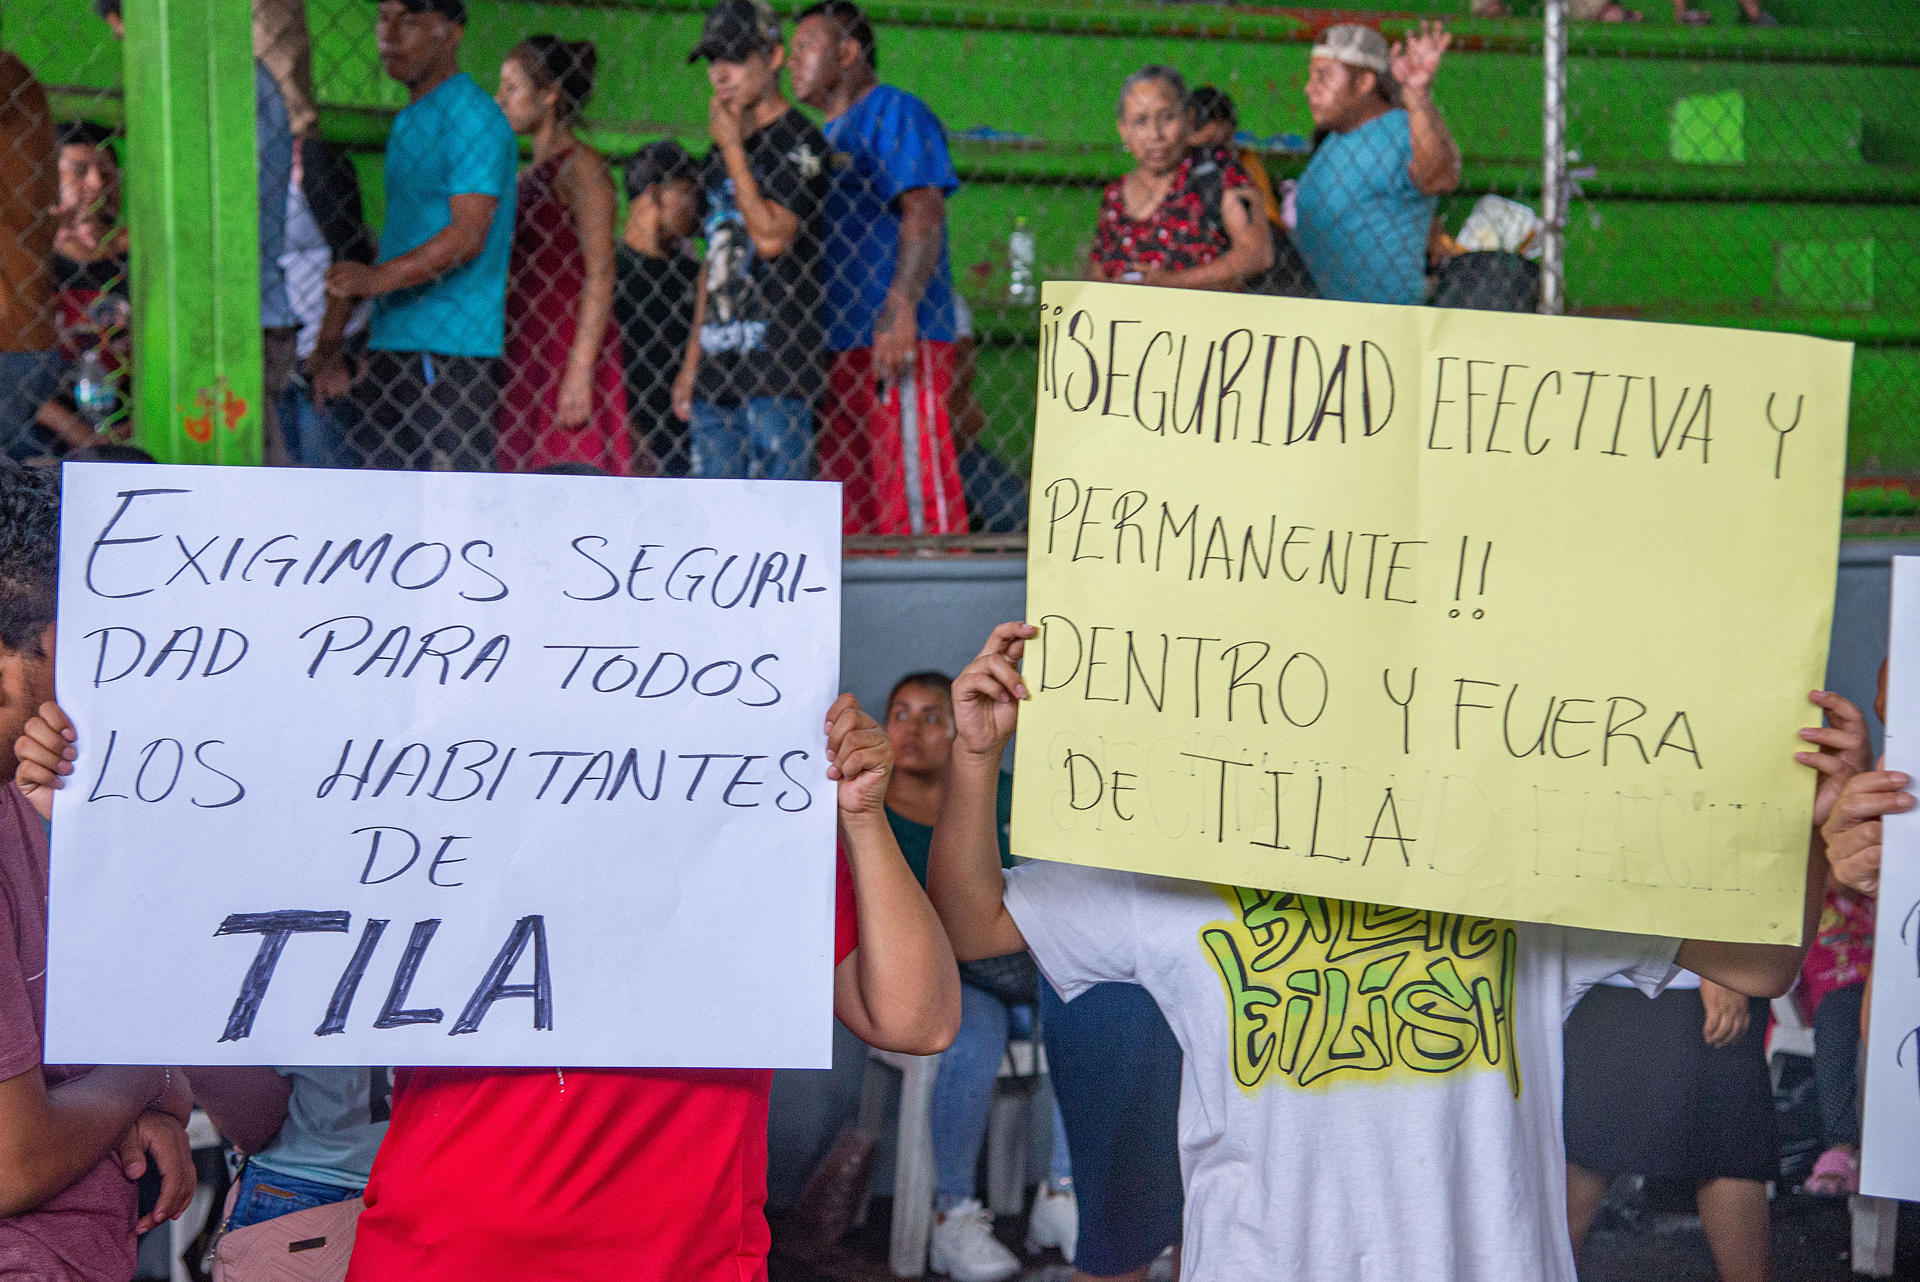 Pobladores de la etnia Chol, se manifiestan este miércoles en la comunidad de Tila, municipio de Yajalón, estado de Chiapas (México). EFE/Carlos López